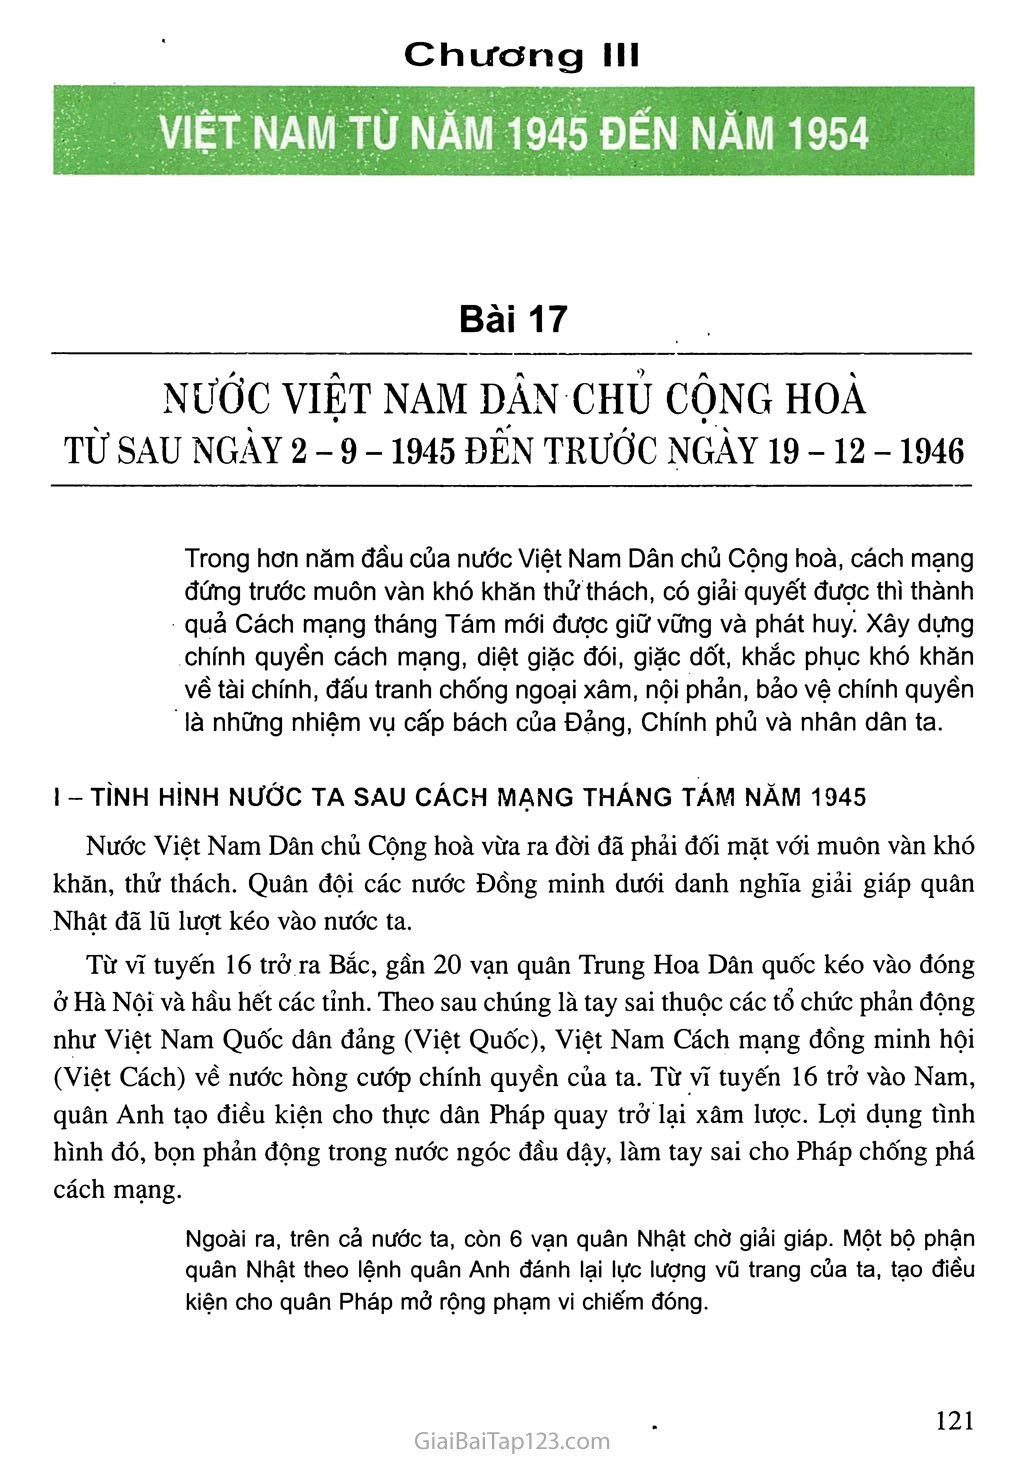 Bài 17. Nước Việt Nam Dân chủ Cộng hoà từ sau ngày 2-9-1945 đến trước ngày 19 - 12 - 1946 trang 1